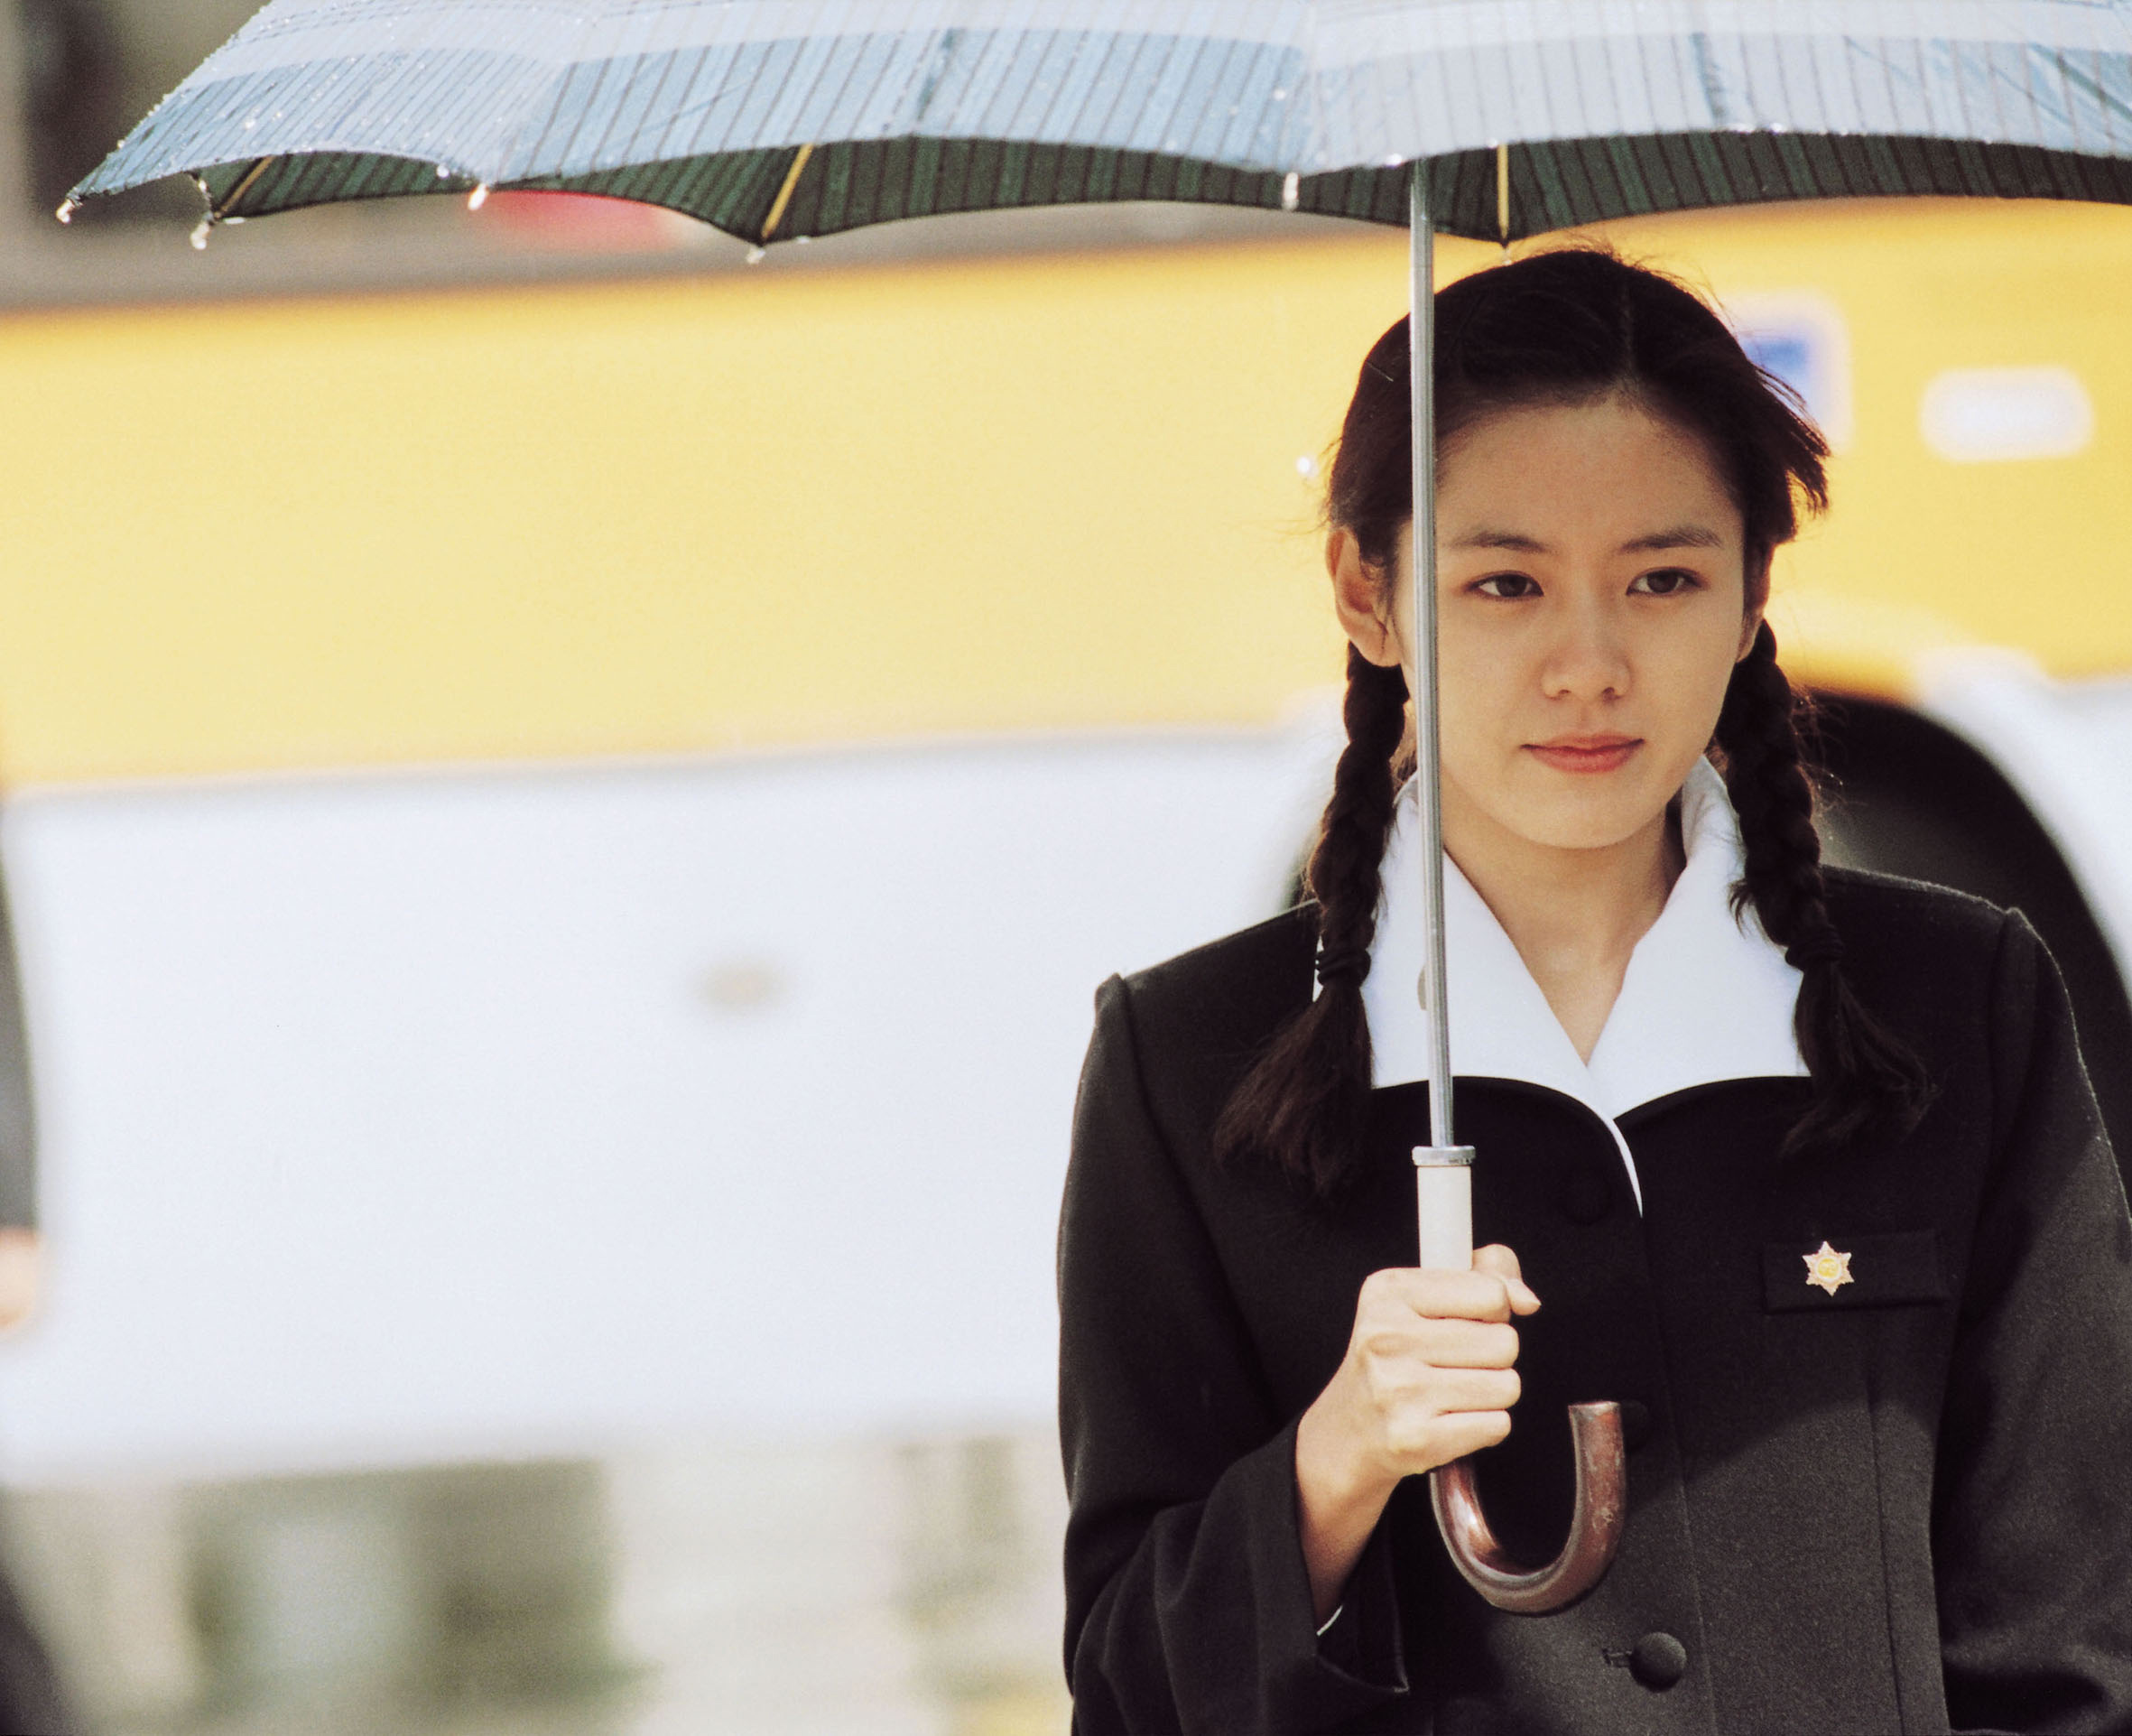 4K修復重新上映《緣起不滅》：孫藝珍奪得新人獎的韓影經典　大時代的悲劇中感受愛的天意